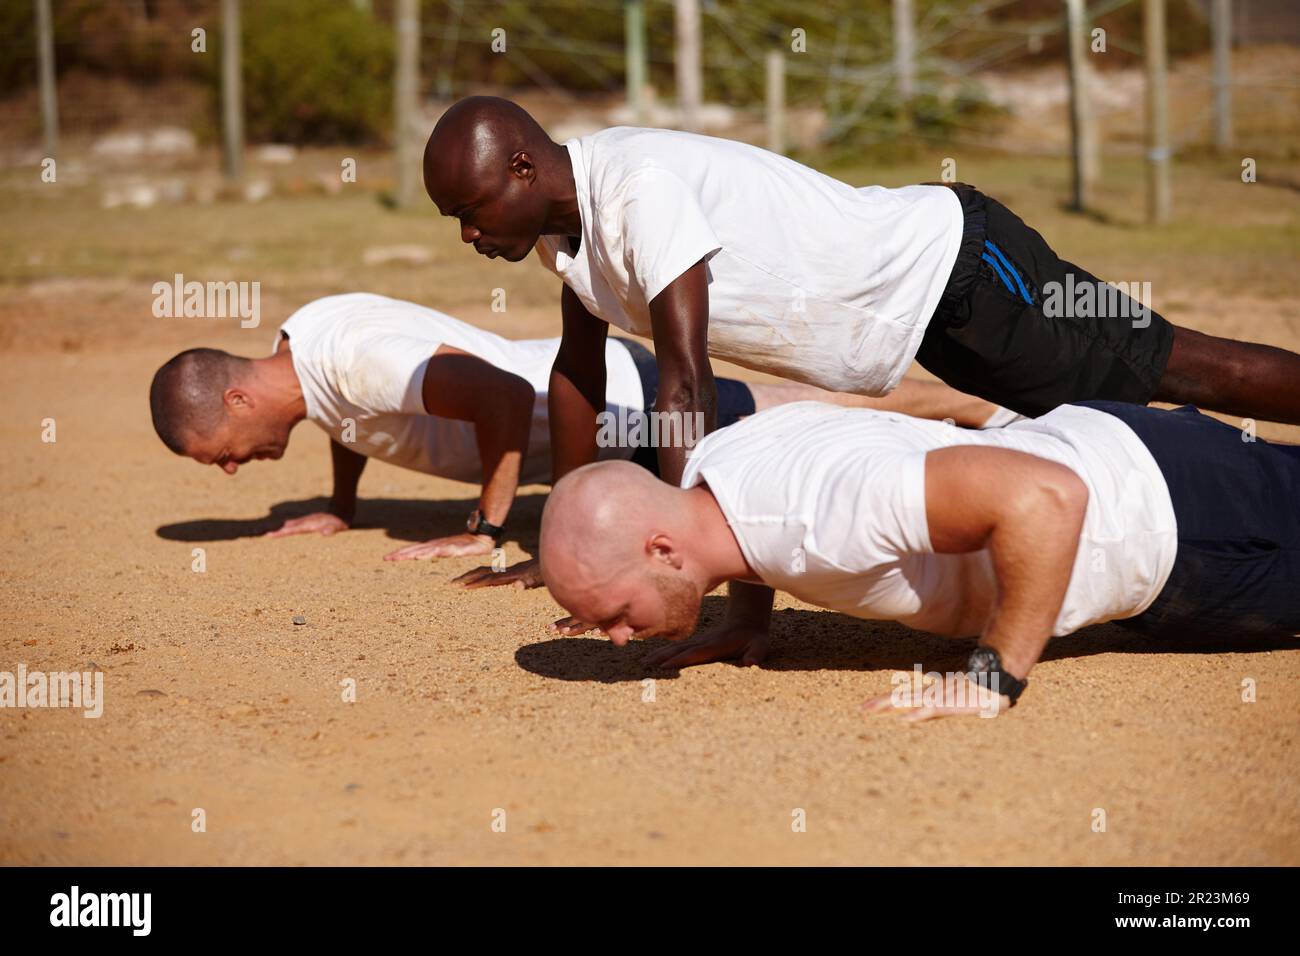 Allenarsi per essere magri, significa combattere le macchine. un gruppo di uomini che fanno push-up in un bootcamp militare. Foto Stock